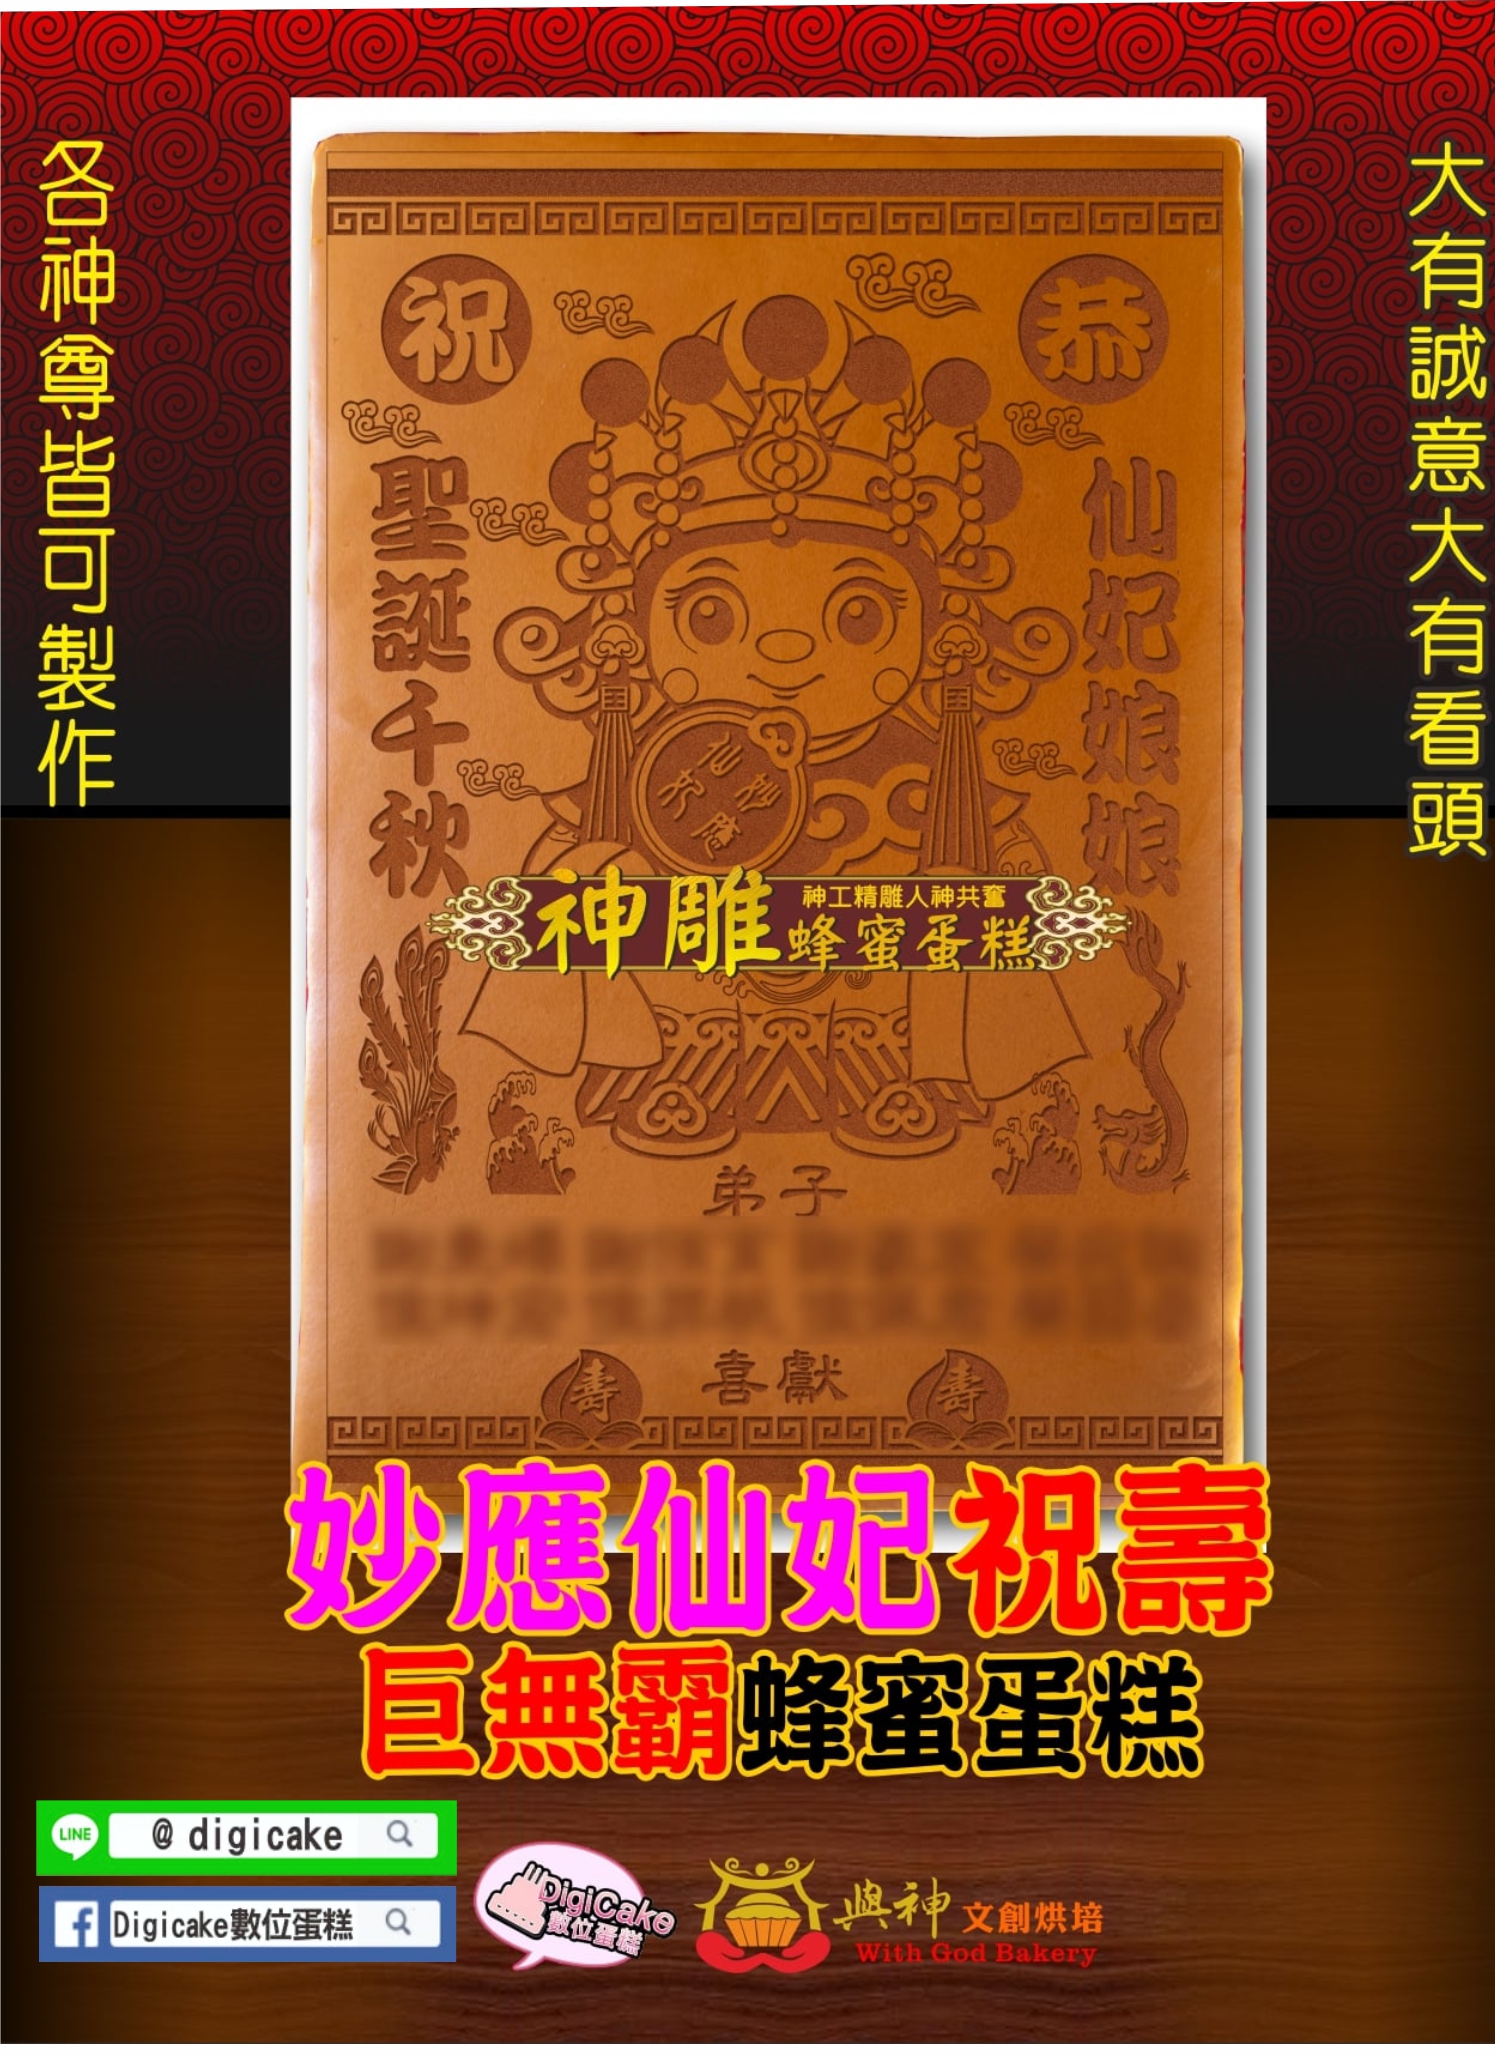 點此進入妙應仙妃大板神雕蜂蜜蛋糕的詳細資料！